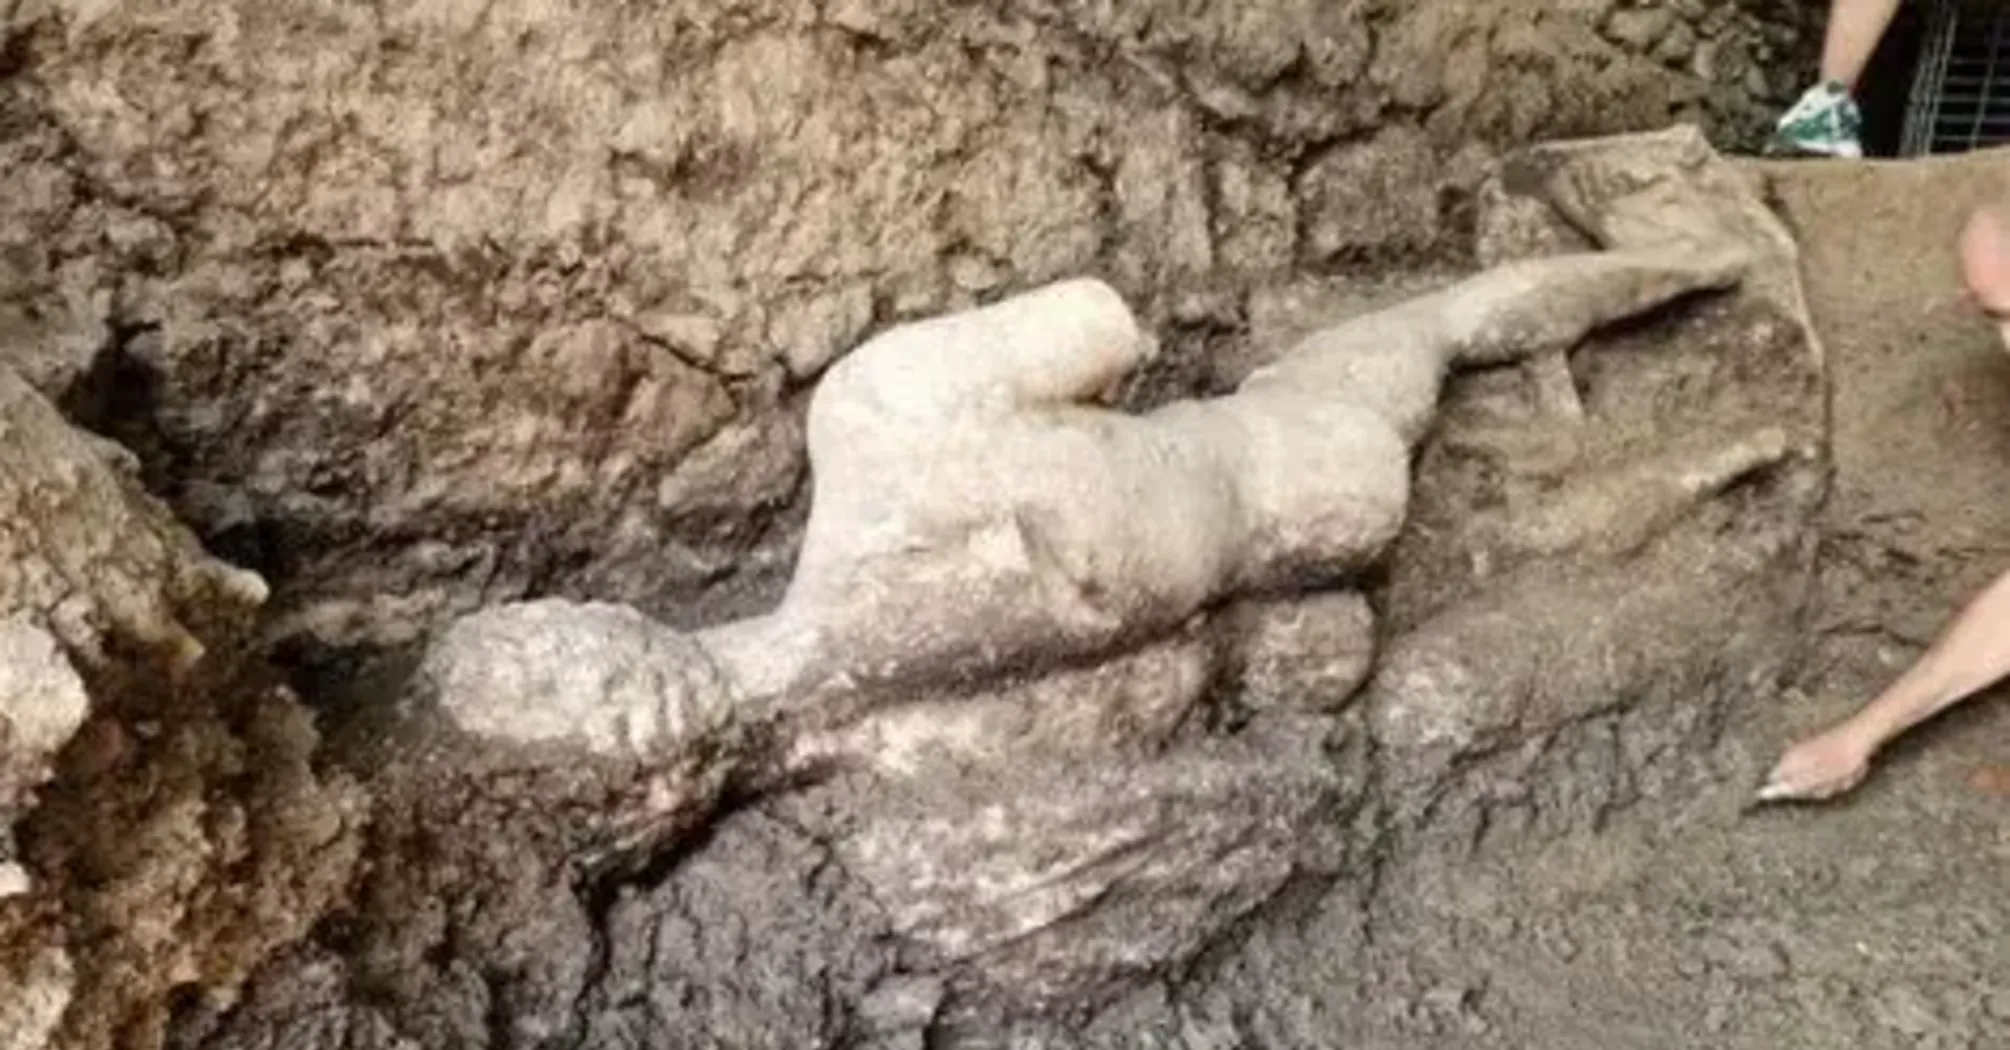 Таинственная находка в канализации: археологи обнаружили целую статую бога Гермеса, которой более 1650 лет (фото)